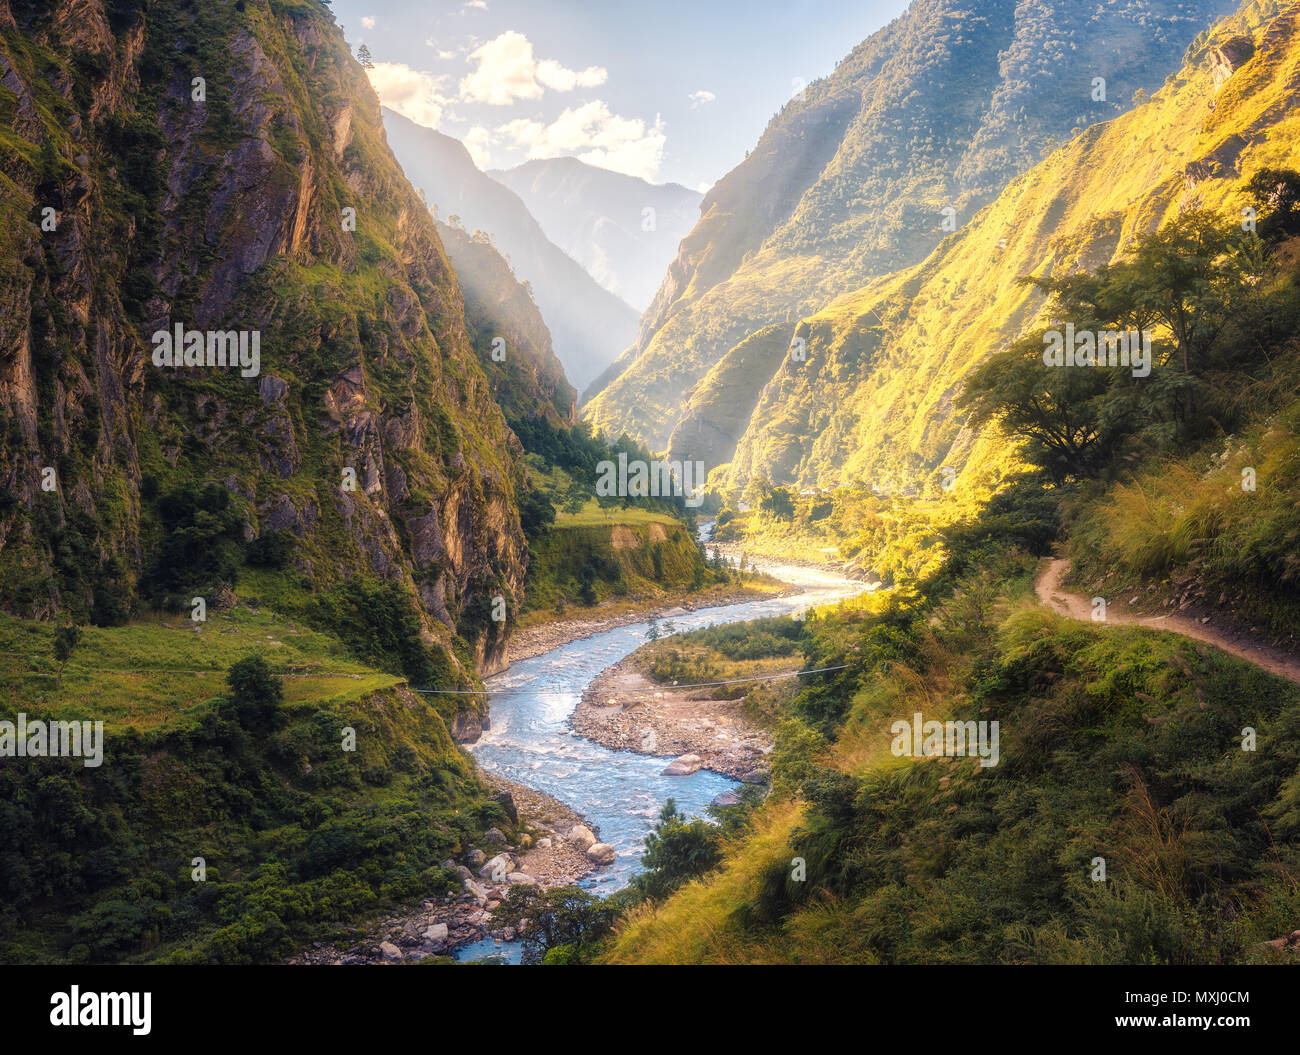 Colorato paesaggio di alta montagna himalayana, bellissimo fiume di curvatura, foresta verde, cielo blu con nuvole e giallo sole al tramonto in estate Foto Stock